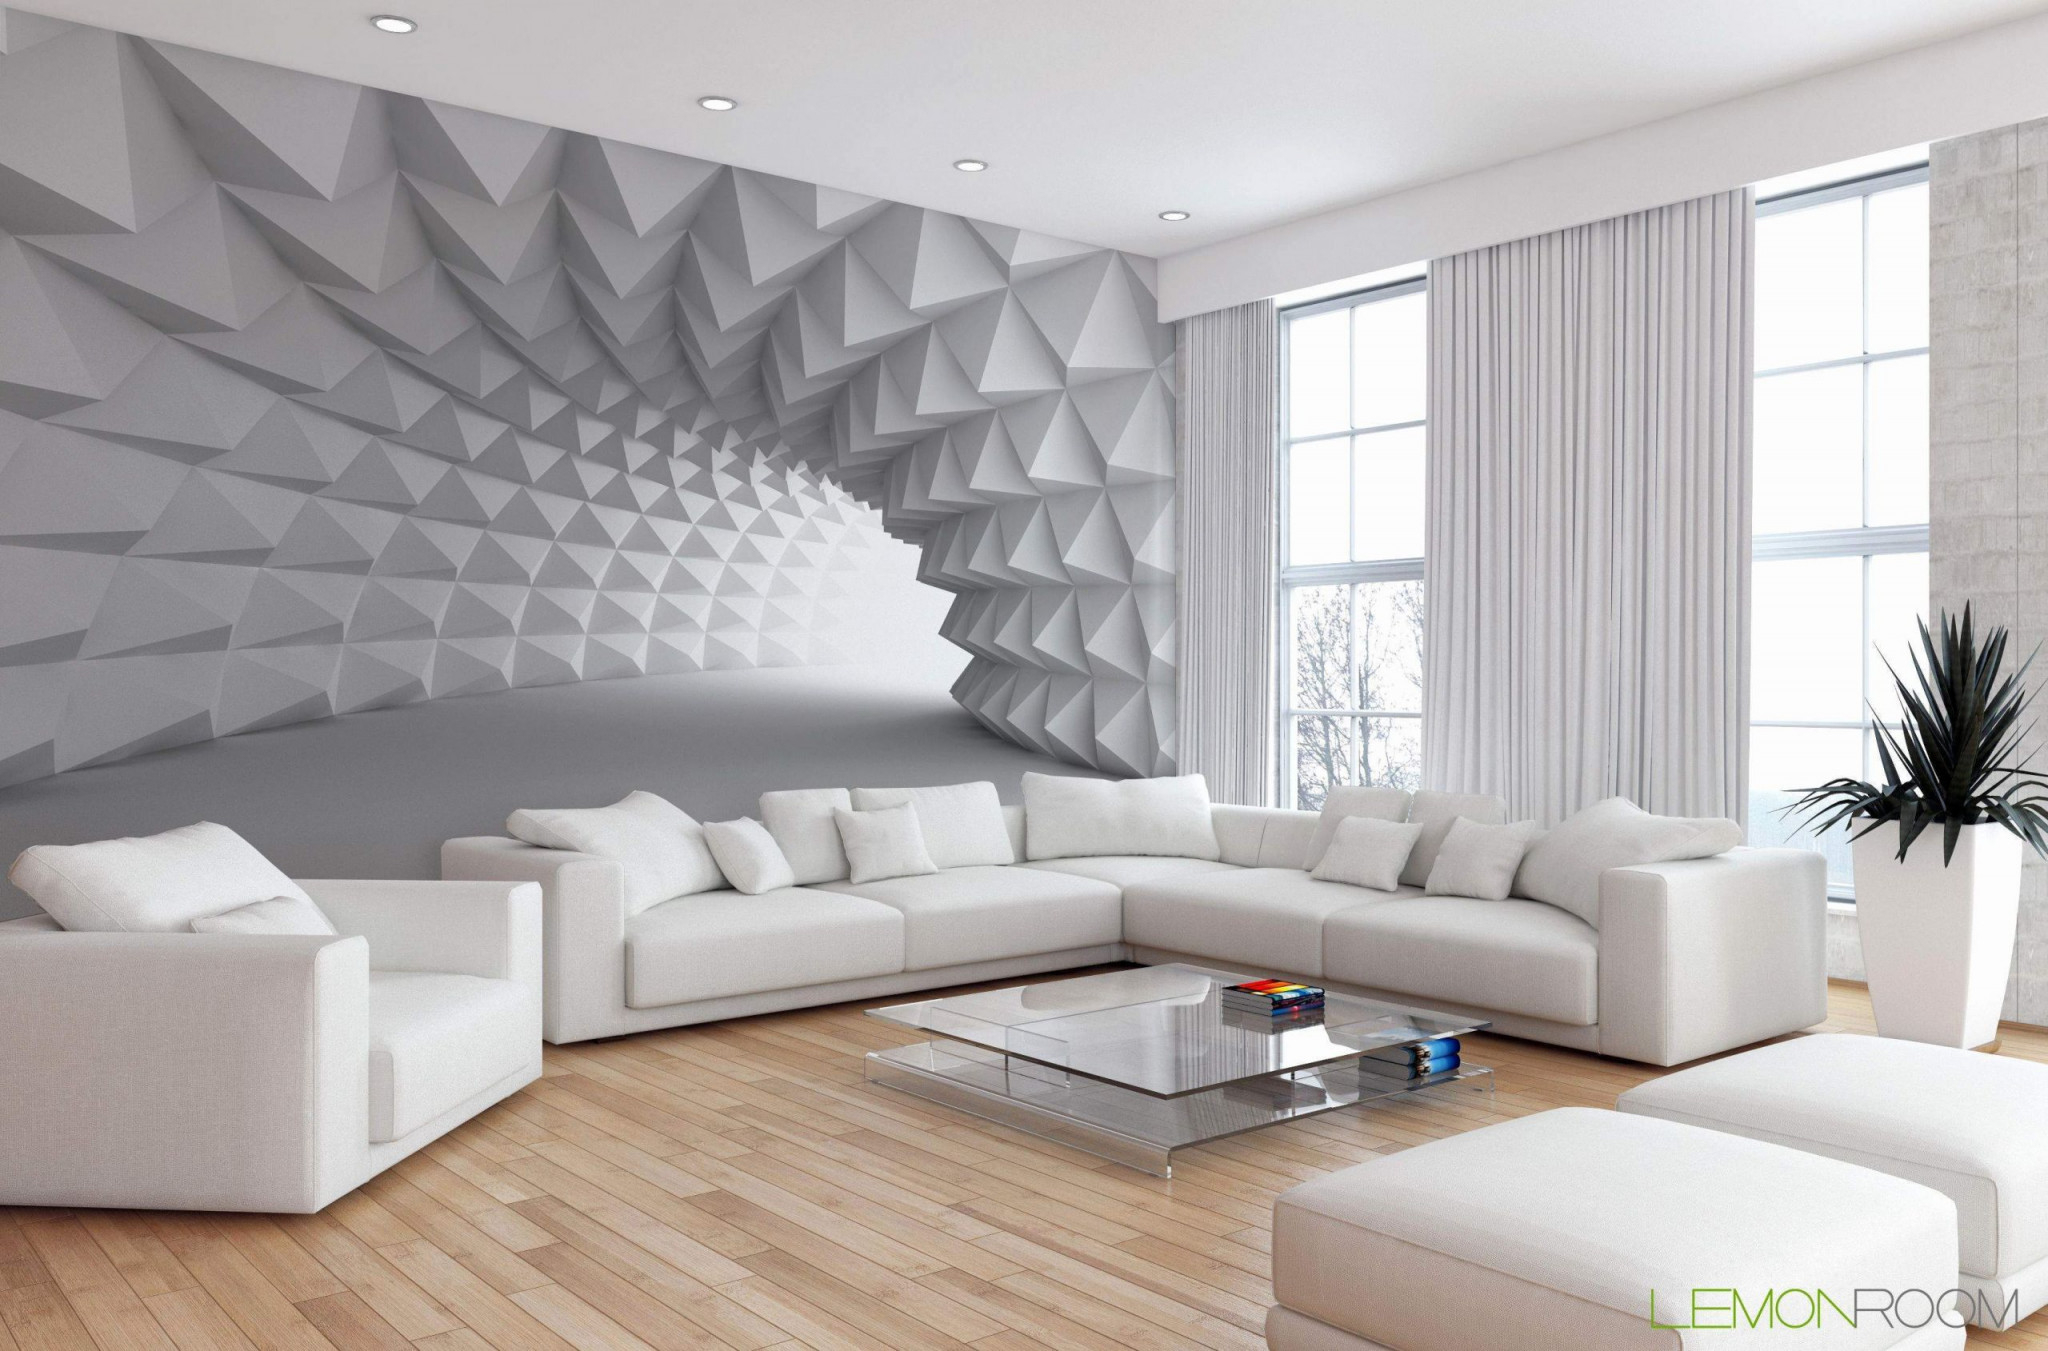 Fototapete Wohnzimmer 3D Das Beste Von 32 Frisch Tapeten von 3D Wohnzimmer Tapeten Bild